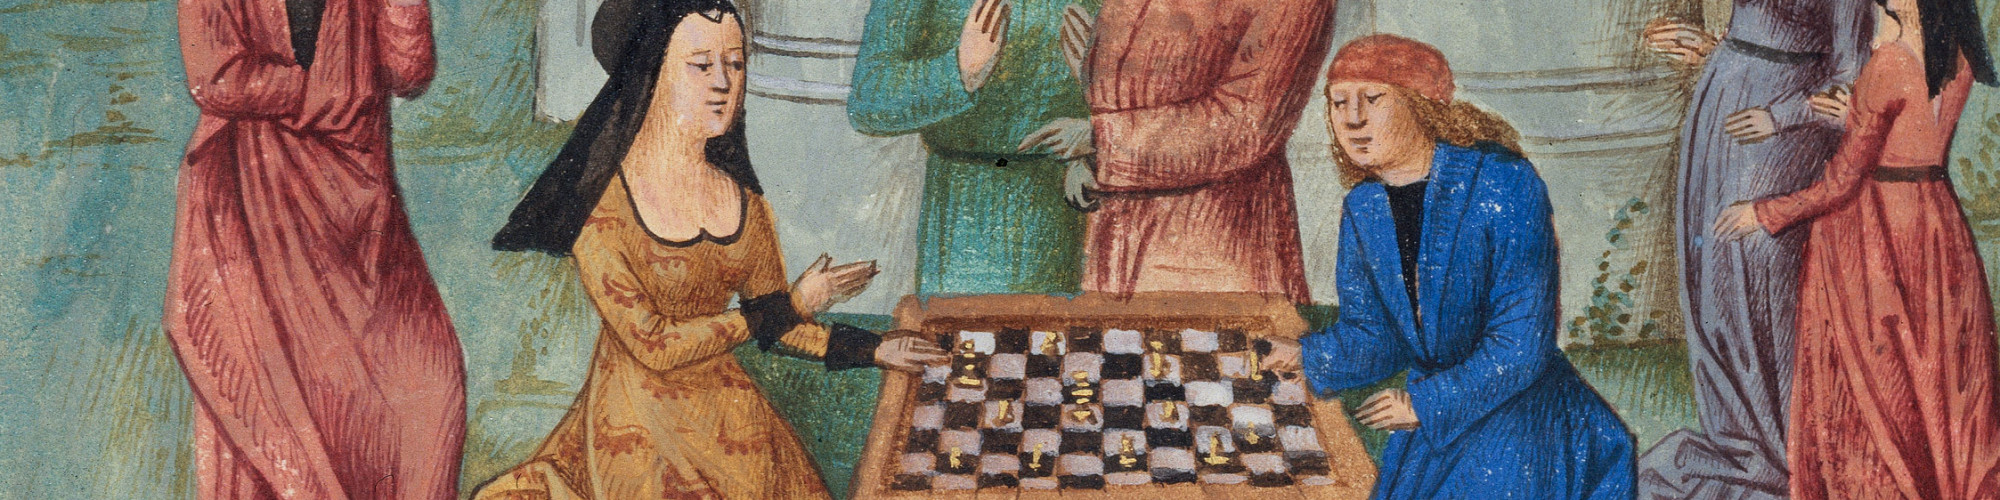 

Partie d'échecs devant un château, par le Maître de Liedekerke

